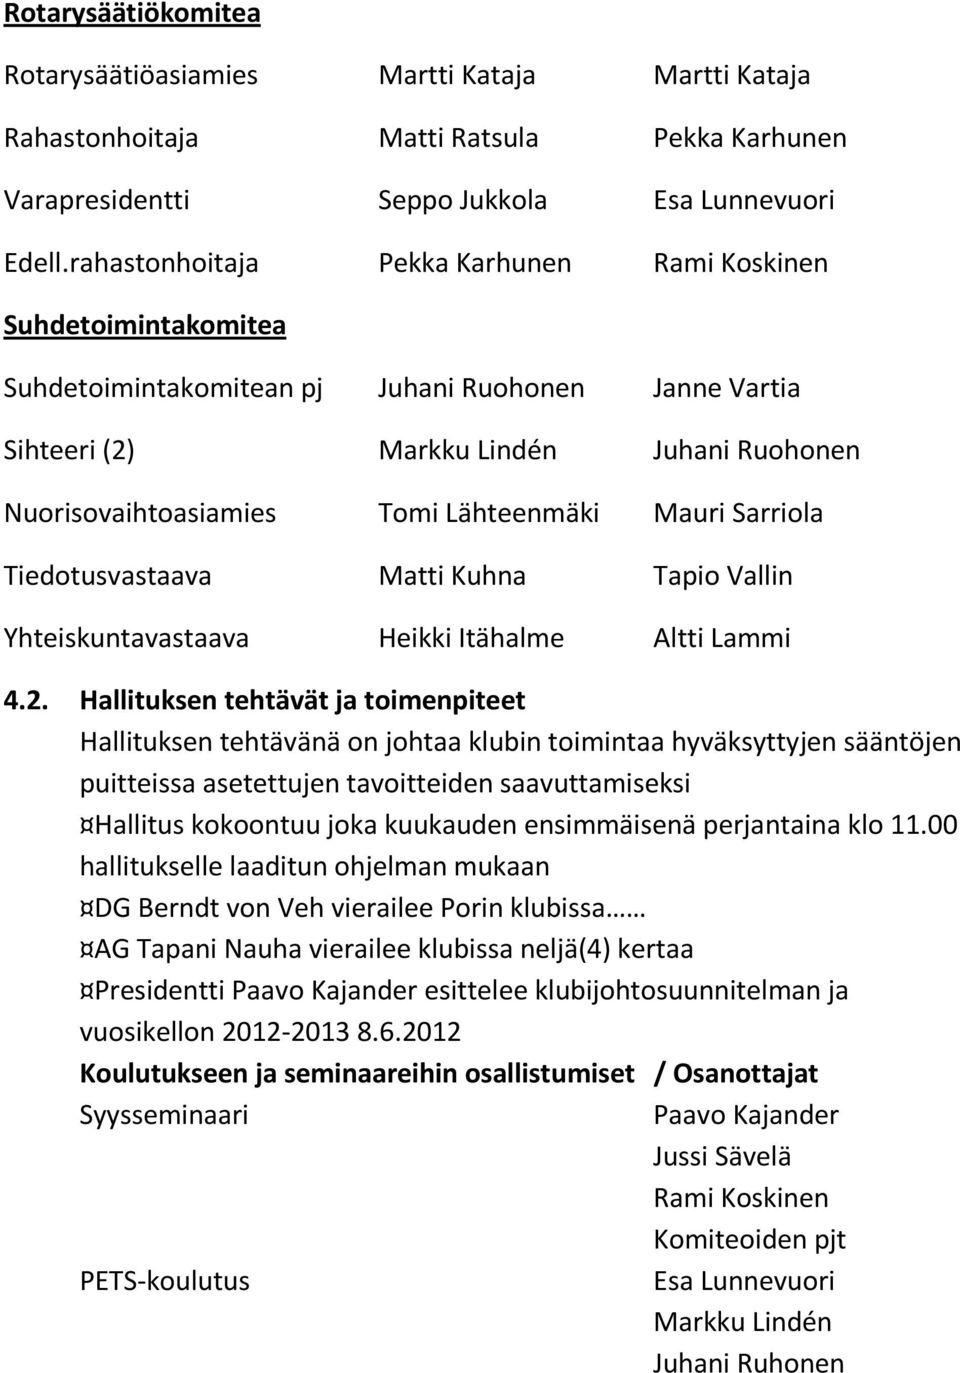 Lähteenmäki Mauri Sarriola Tiedotusvastaava Matti Kuhna Tapio Vallin Yhteiskuntavastaava Heikki Itähalme Altti Lammi 4.2.